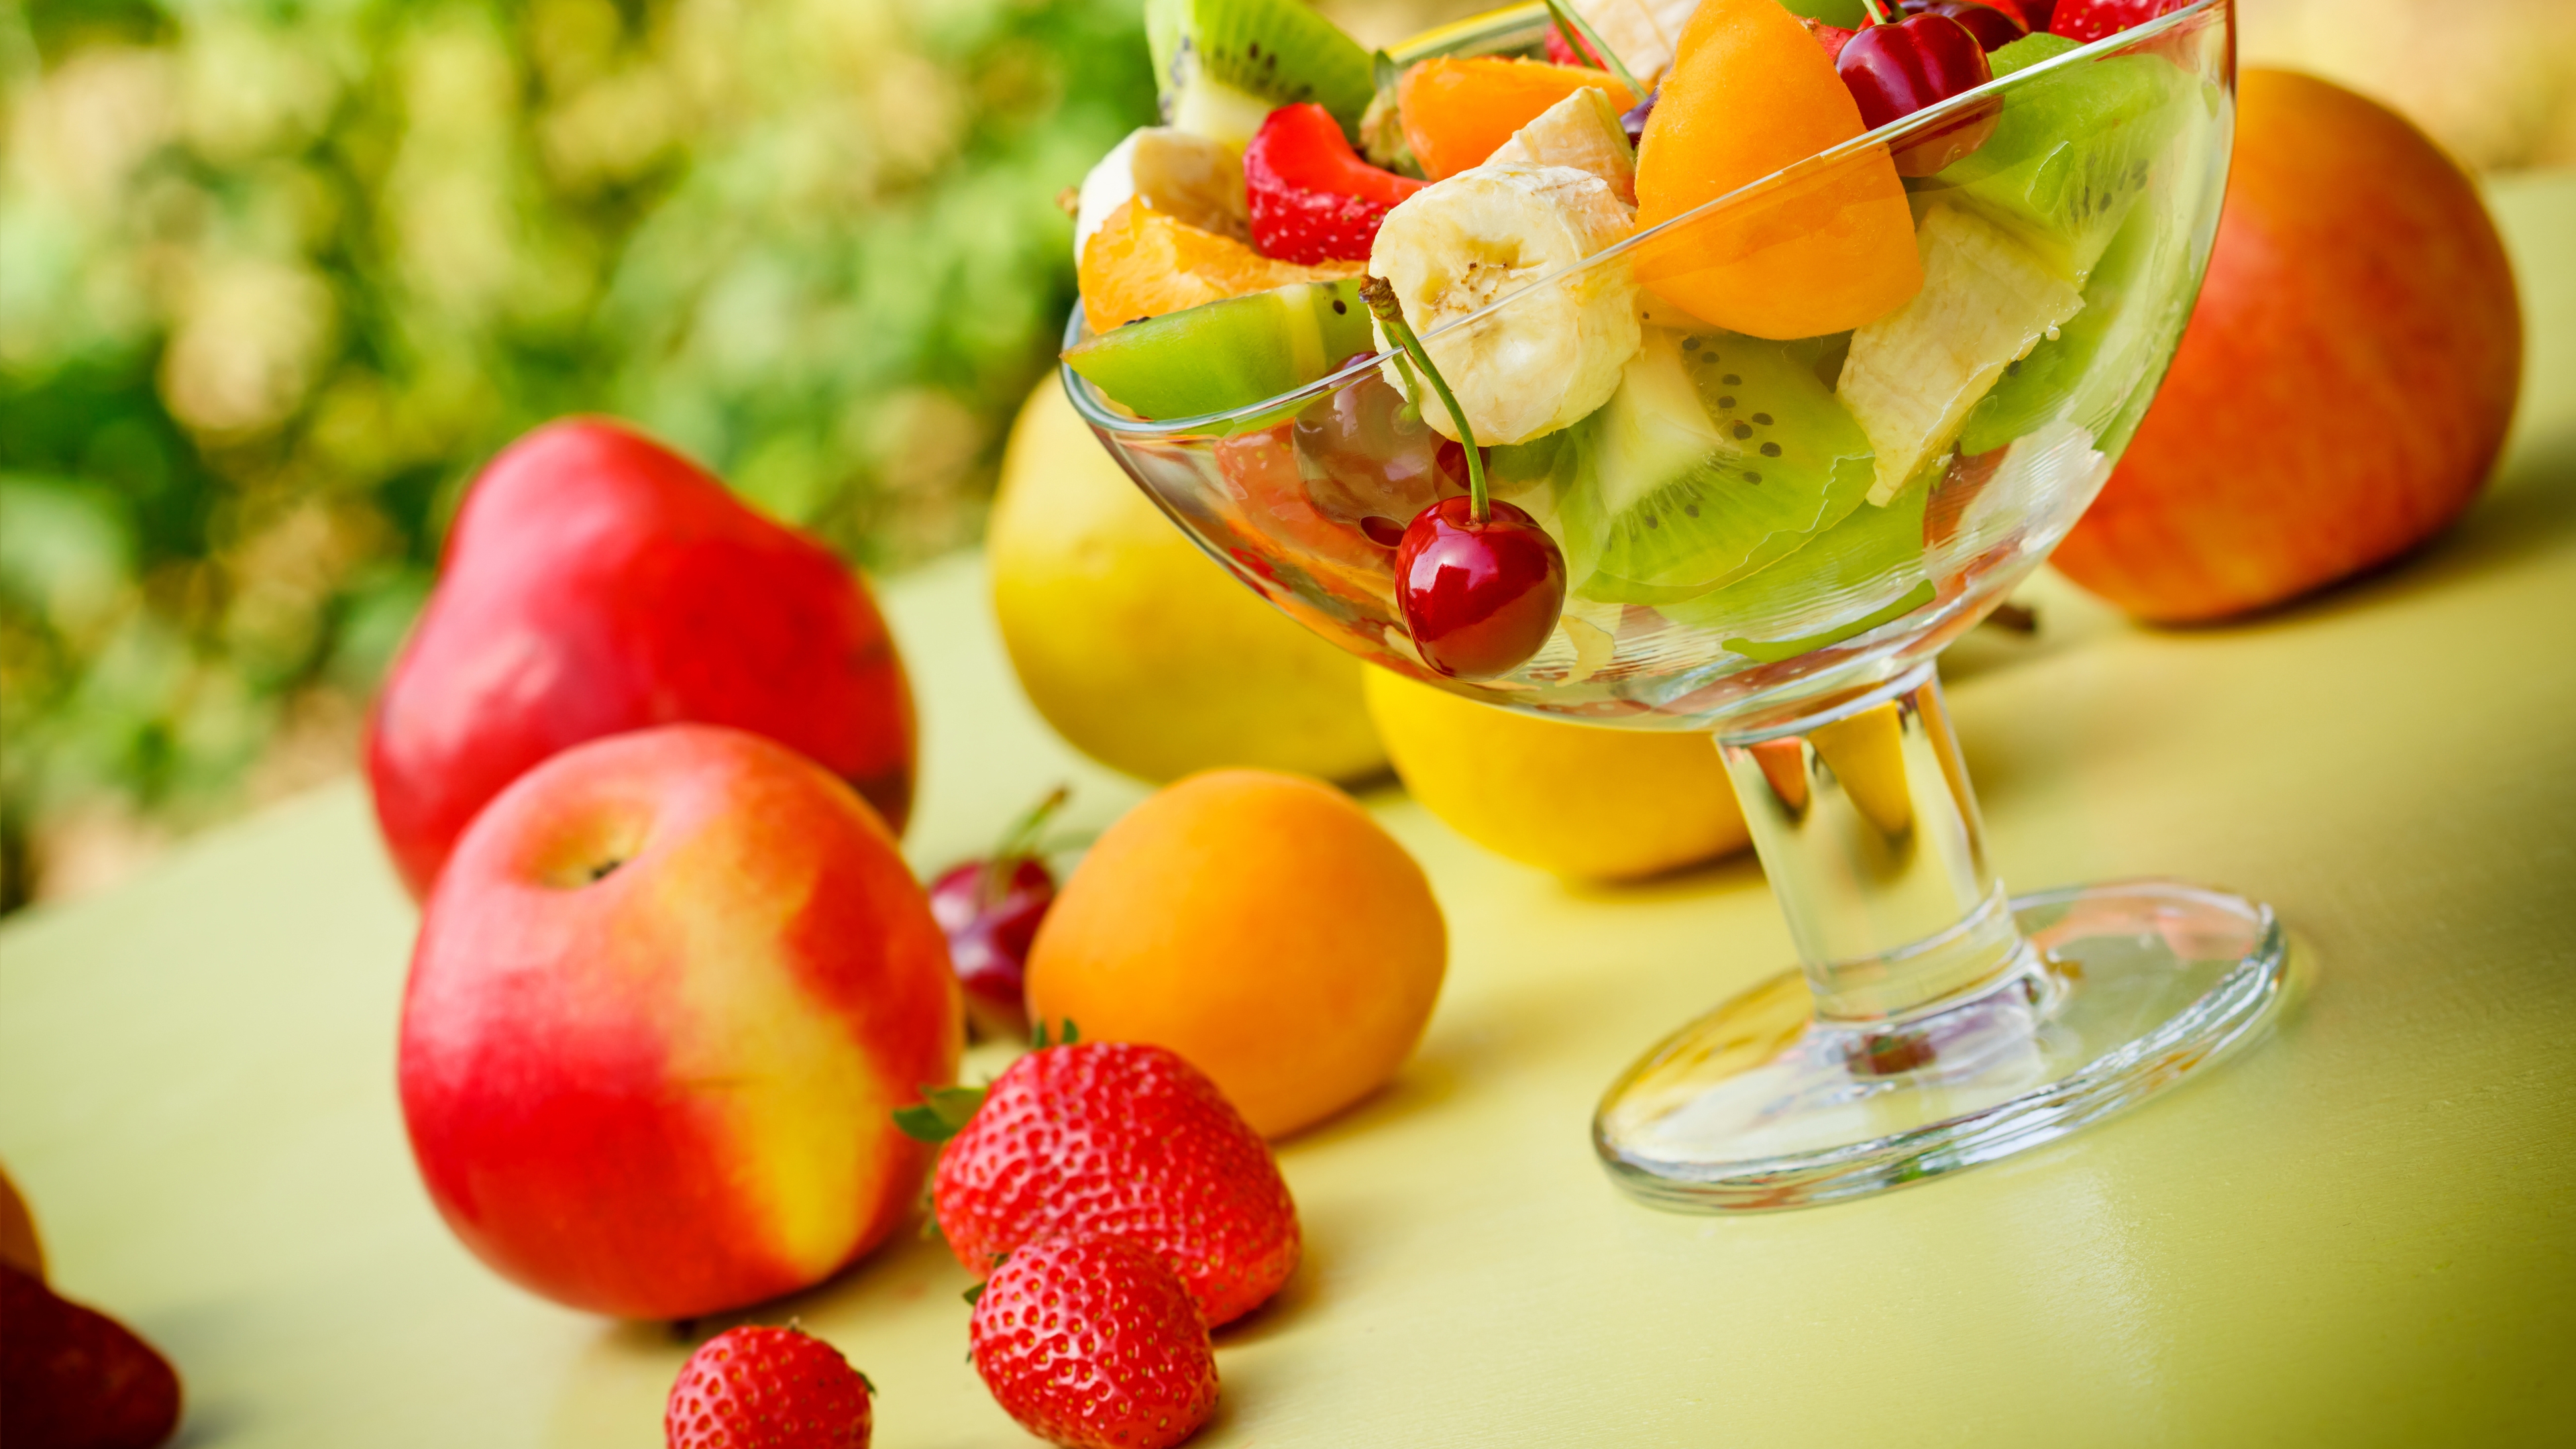 Картинка: Десерт, фрукты, банан, яблоко, клубника, абрикос, киви, черешня, ягоды